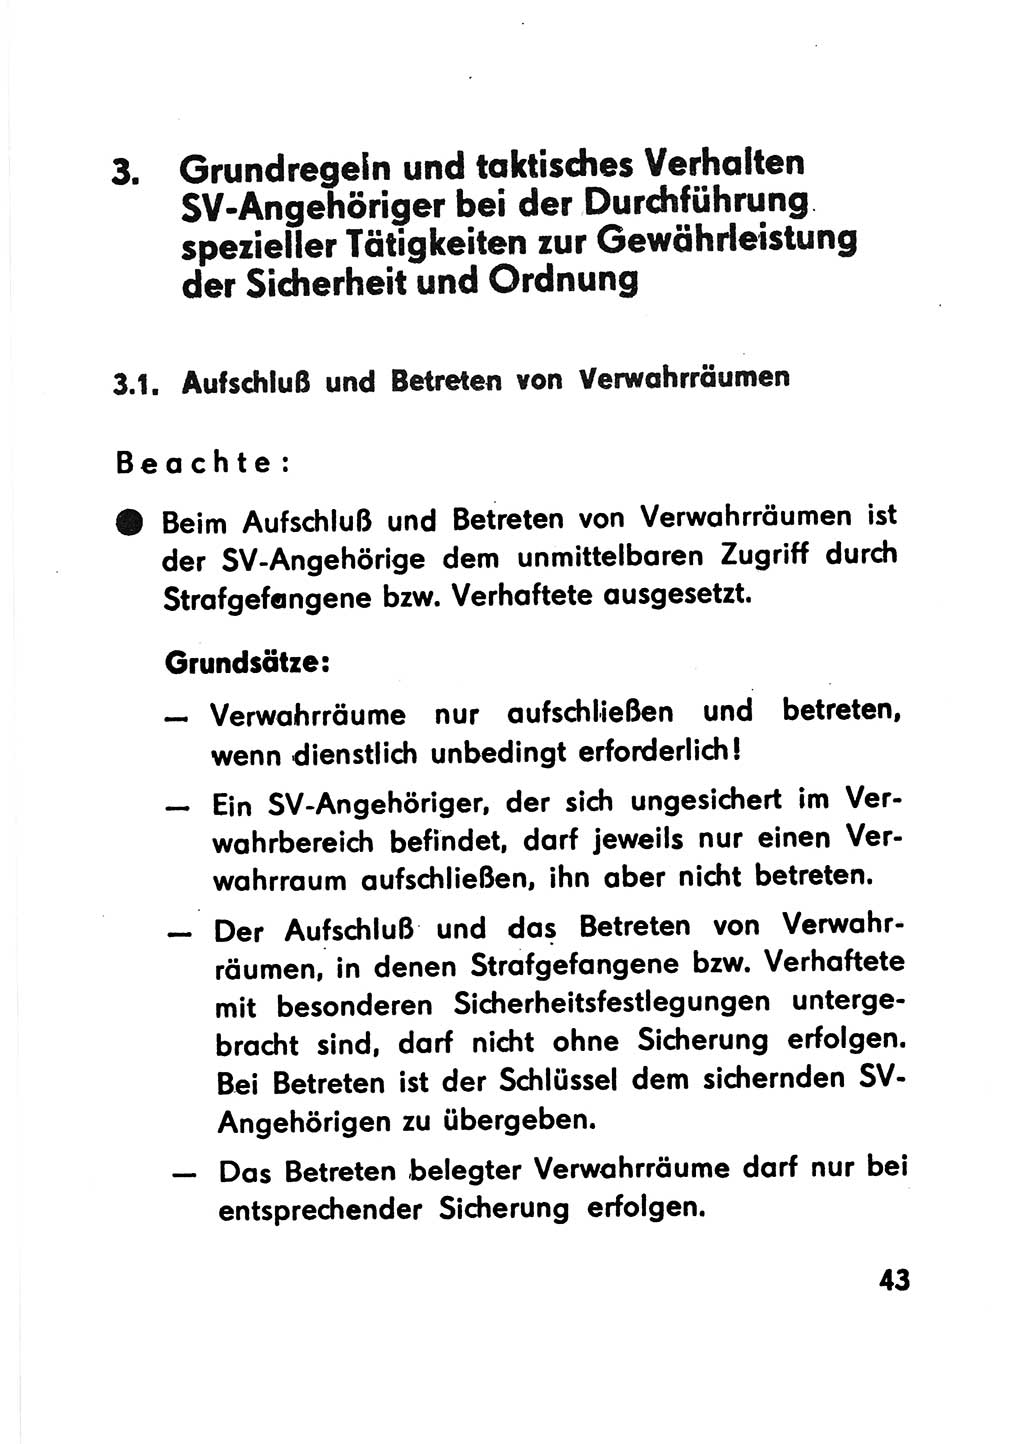 Merkbuch für SV-Angehörige [Strafvollzug (SV) Deutsche Demokratische Republik (DDR)] 1975, Seite 43 (SV-Angeh. DDR 1975, S. 43)